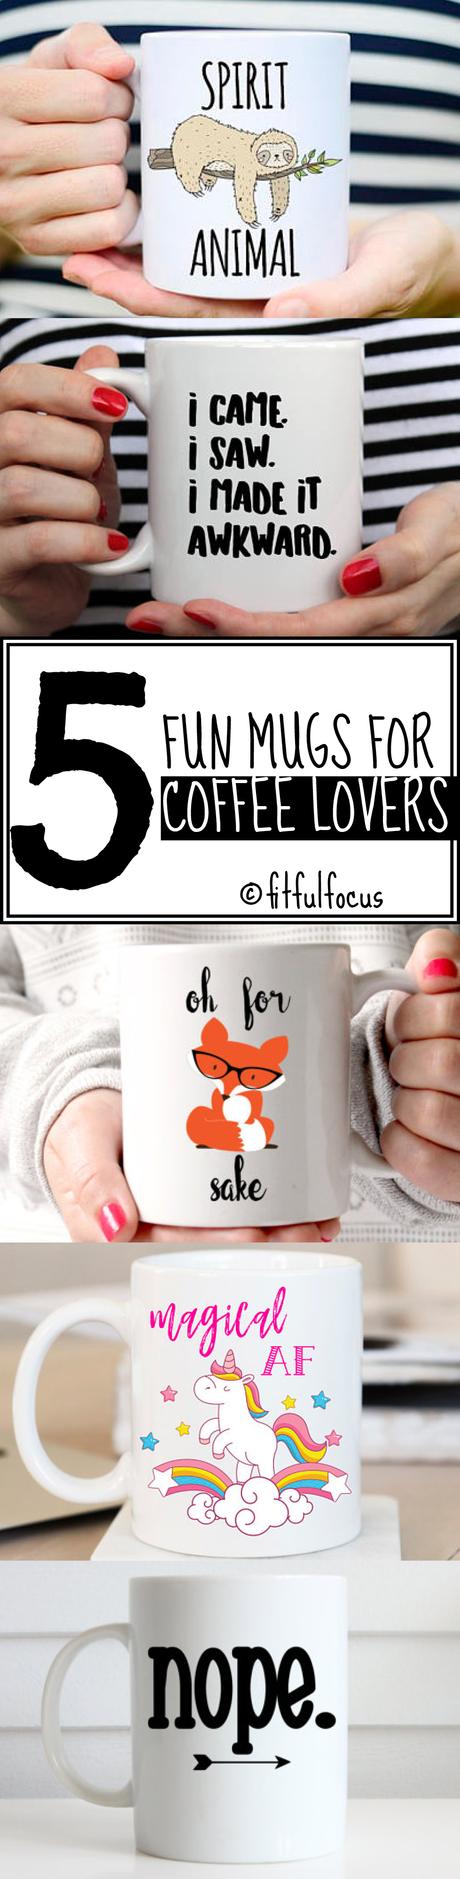 Five Fun Mugs For Coffee Lovers